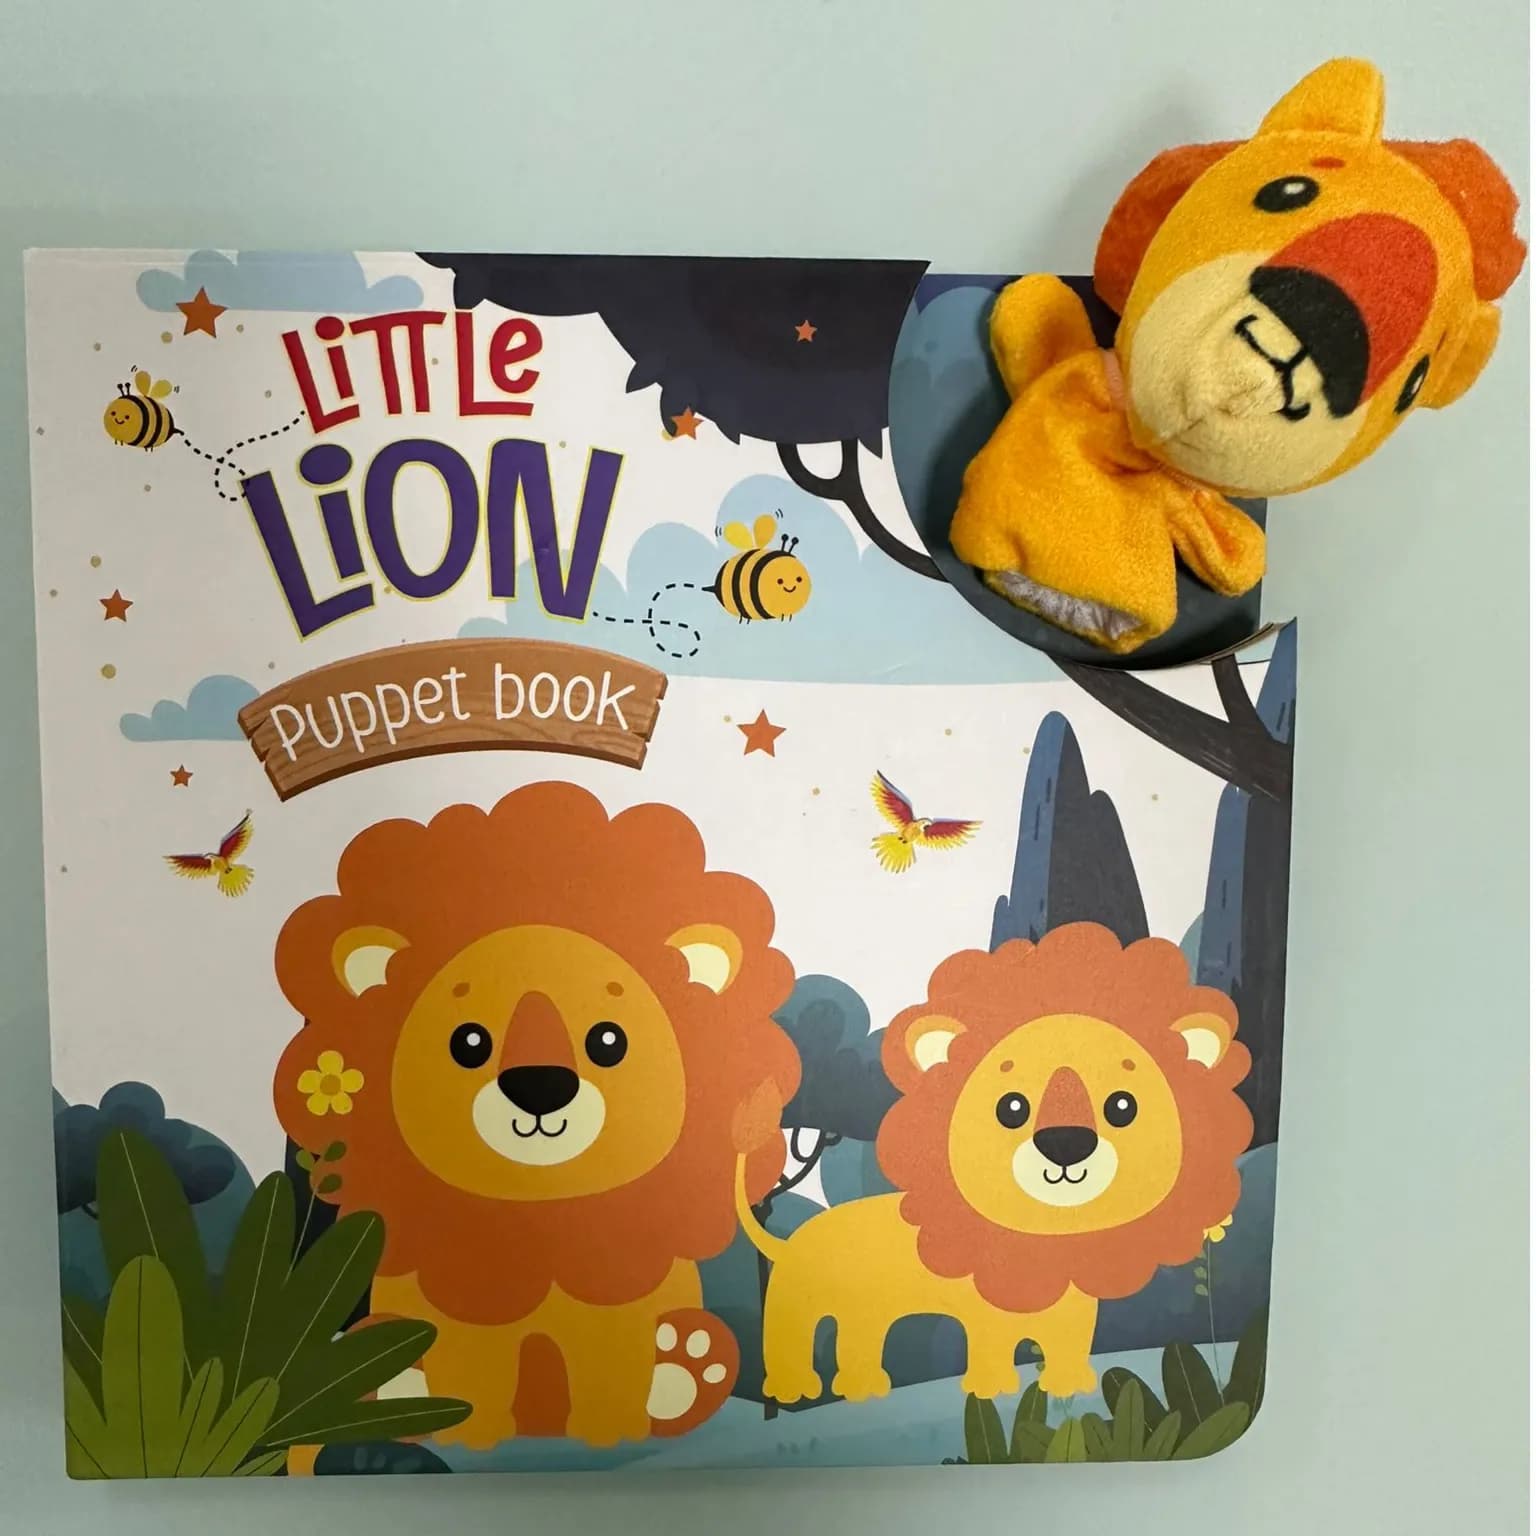 LITTLE LION - PUPPET BOOK